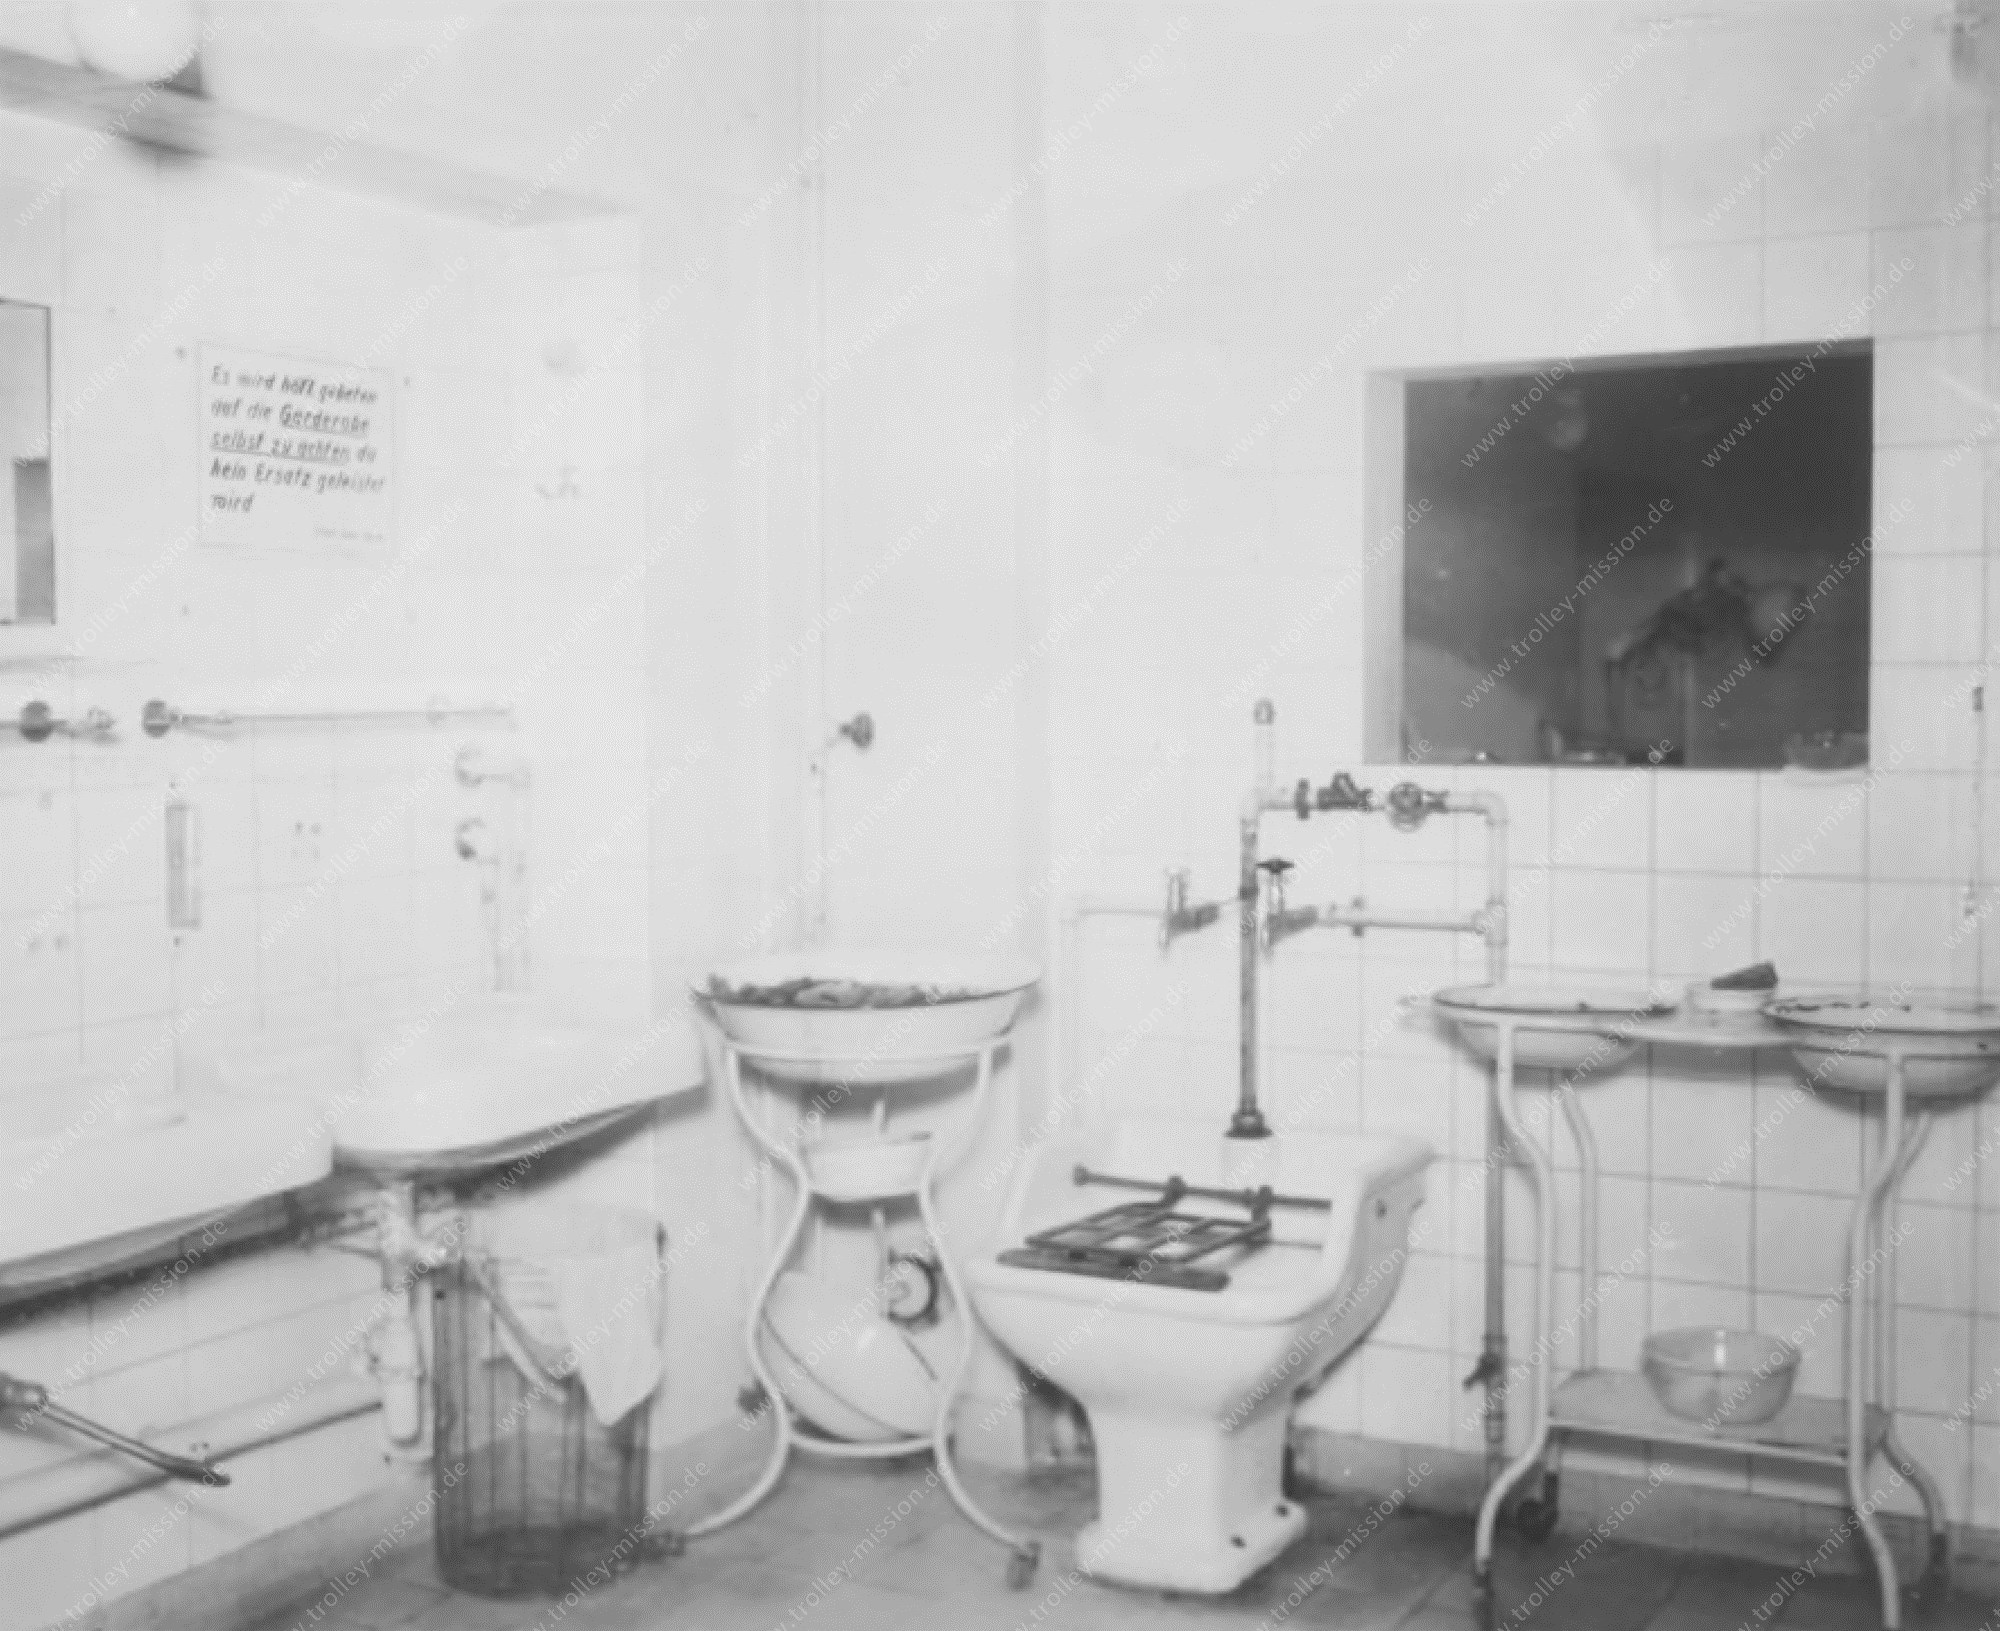 Zweiter Weltkrieg - Luftschutz - Tiefbunker - Uniklinik - Krankenhaus - Bunker - Frankfurt am Main